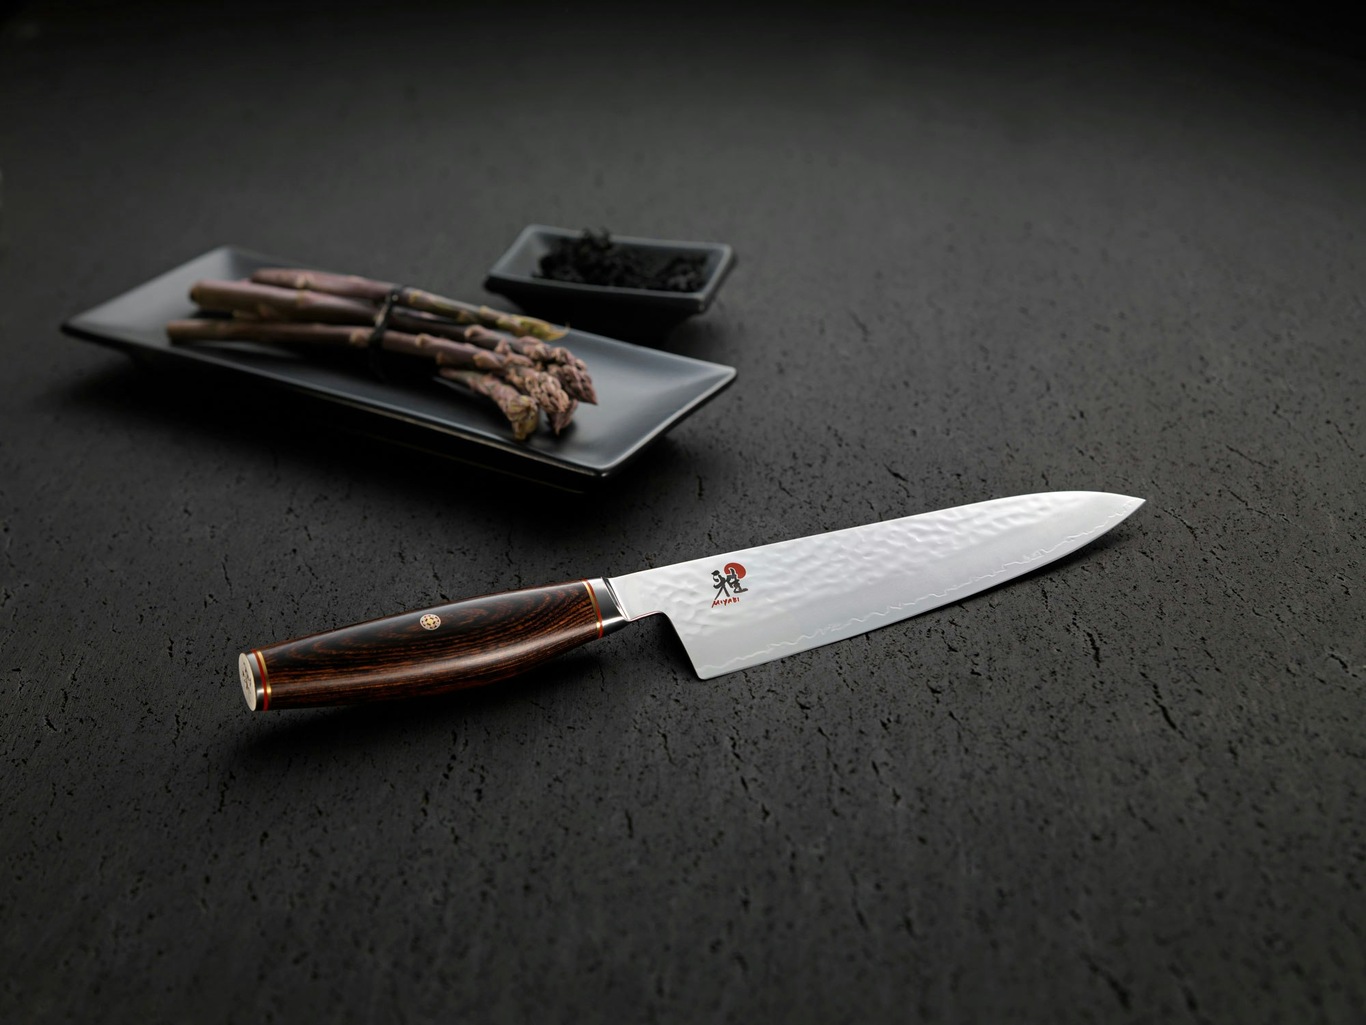 https://royaldesign.com/image/11/miyabi-miyabi-artisan-6000mct-knife-set-3-pieces-3?w=800&quality=80